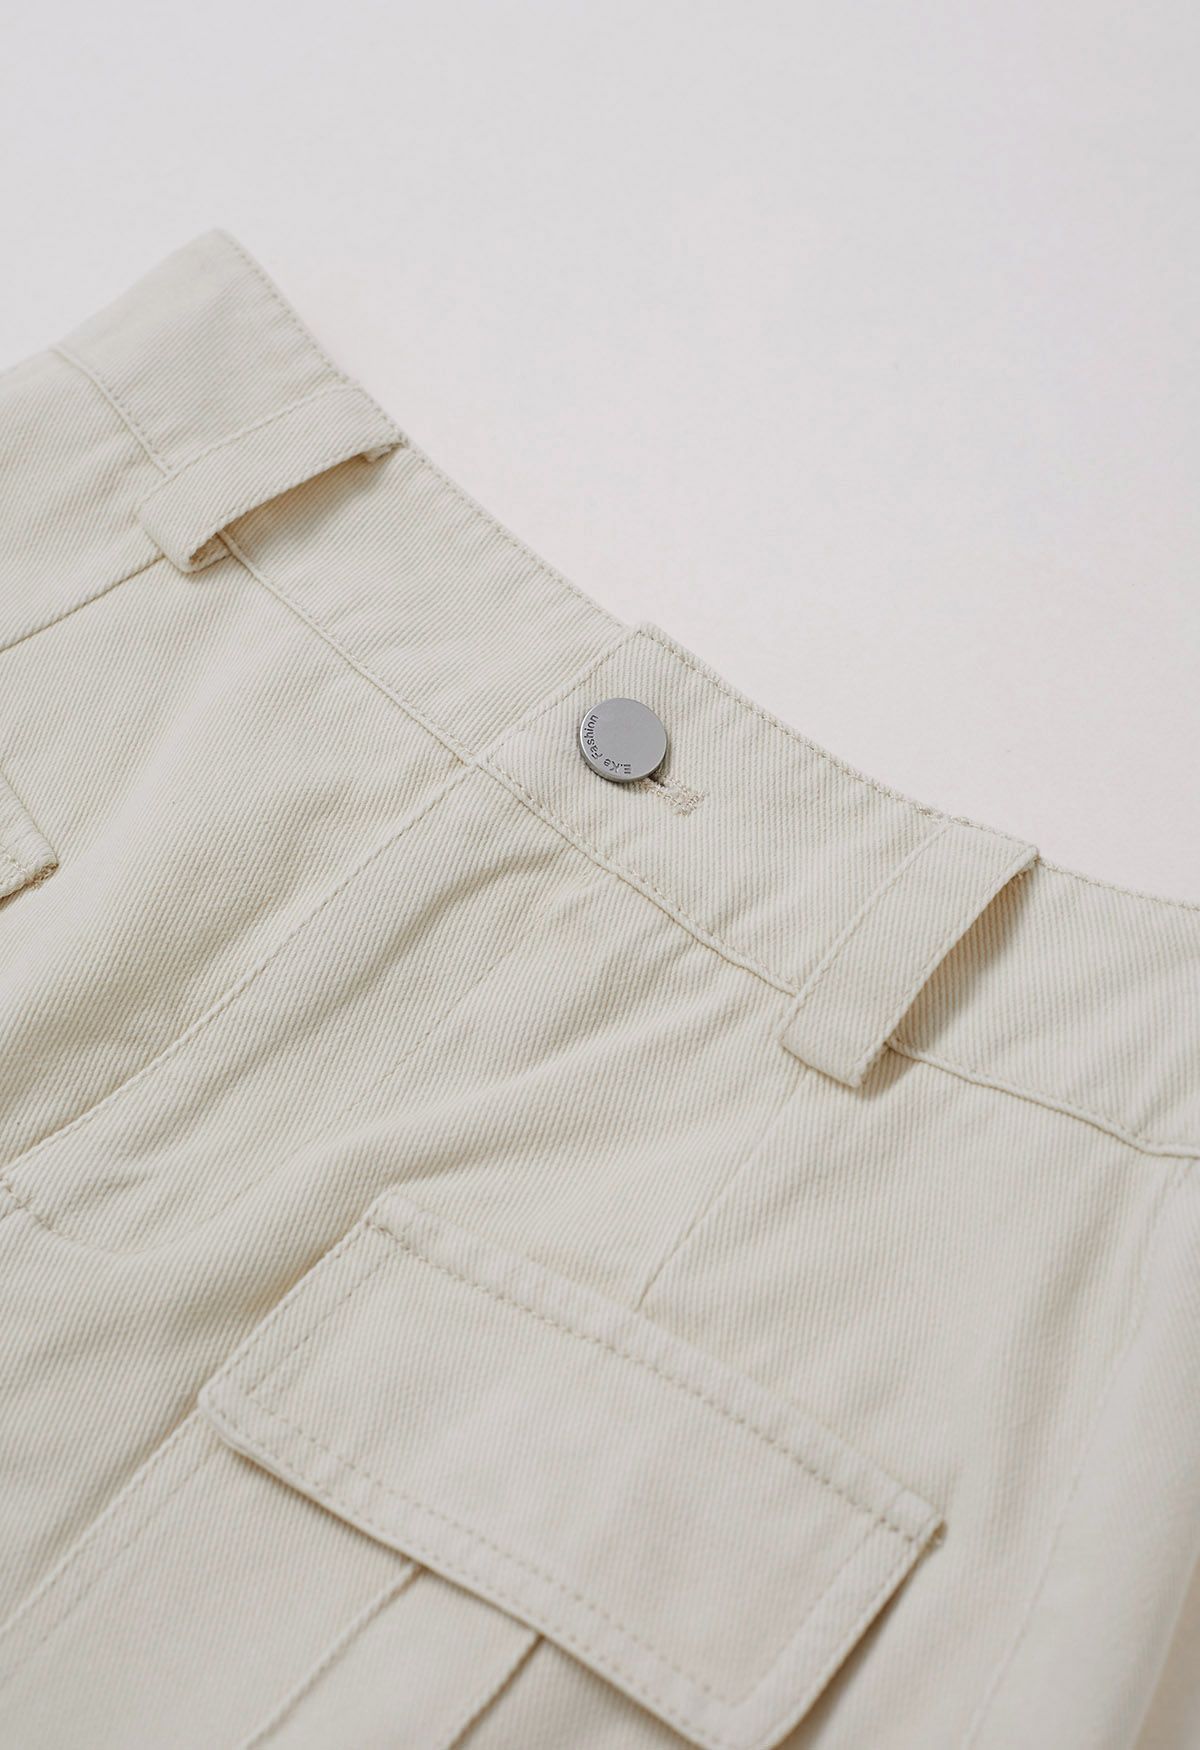 Mini-jupe en jean avec poche à rabat et ceinture en ivoire